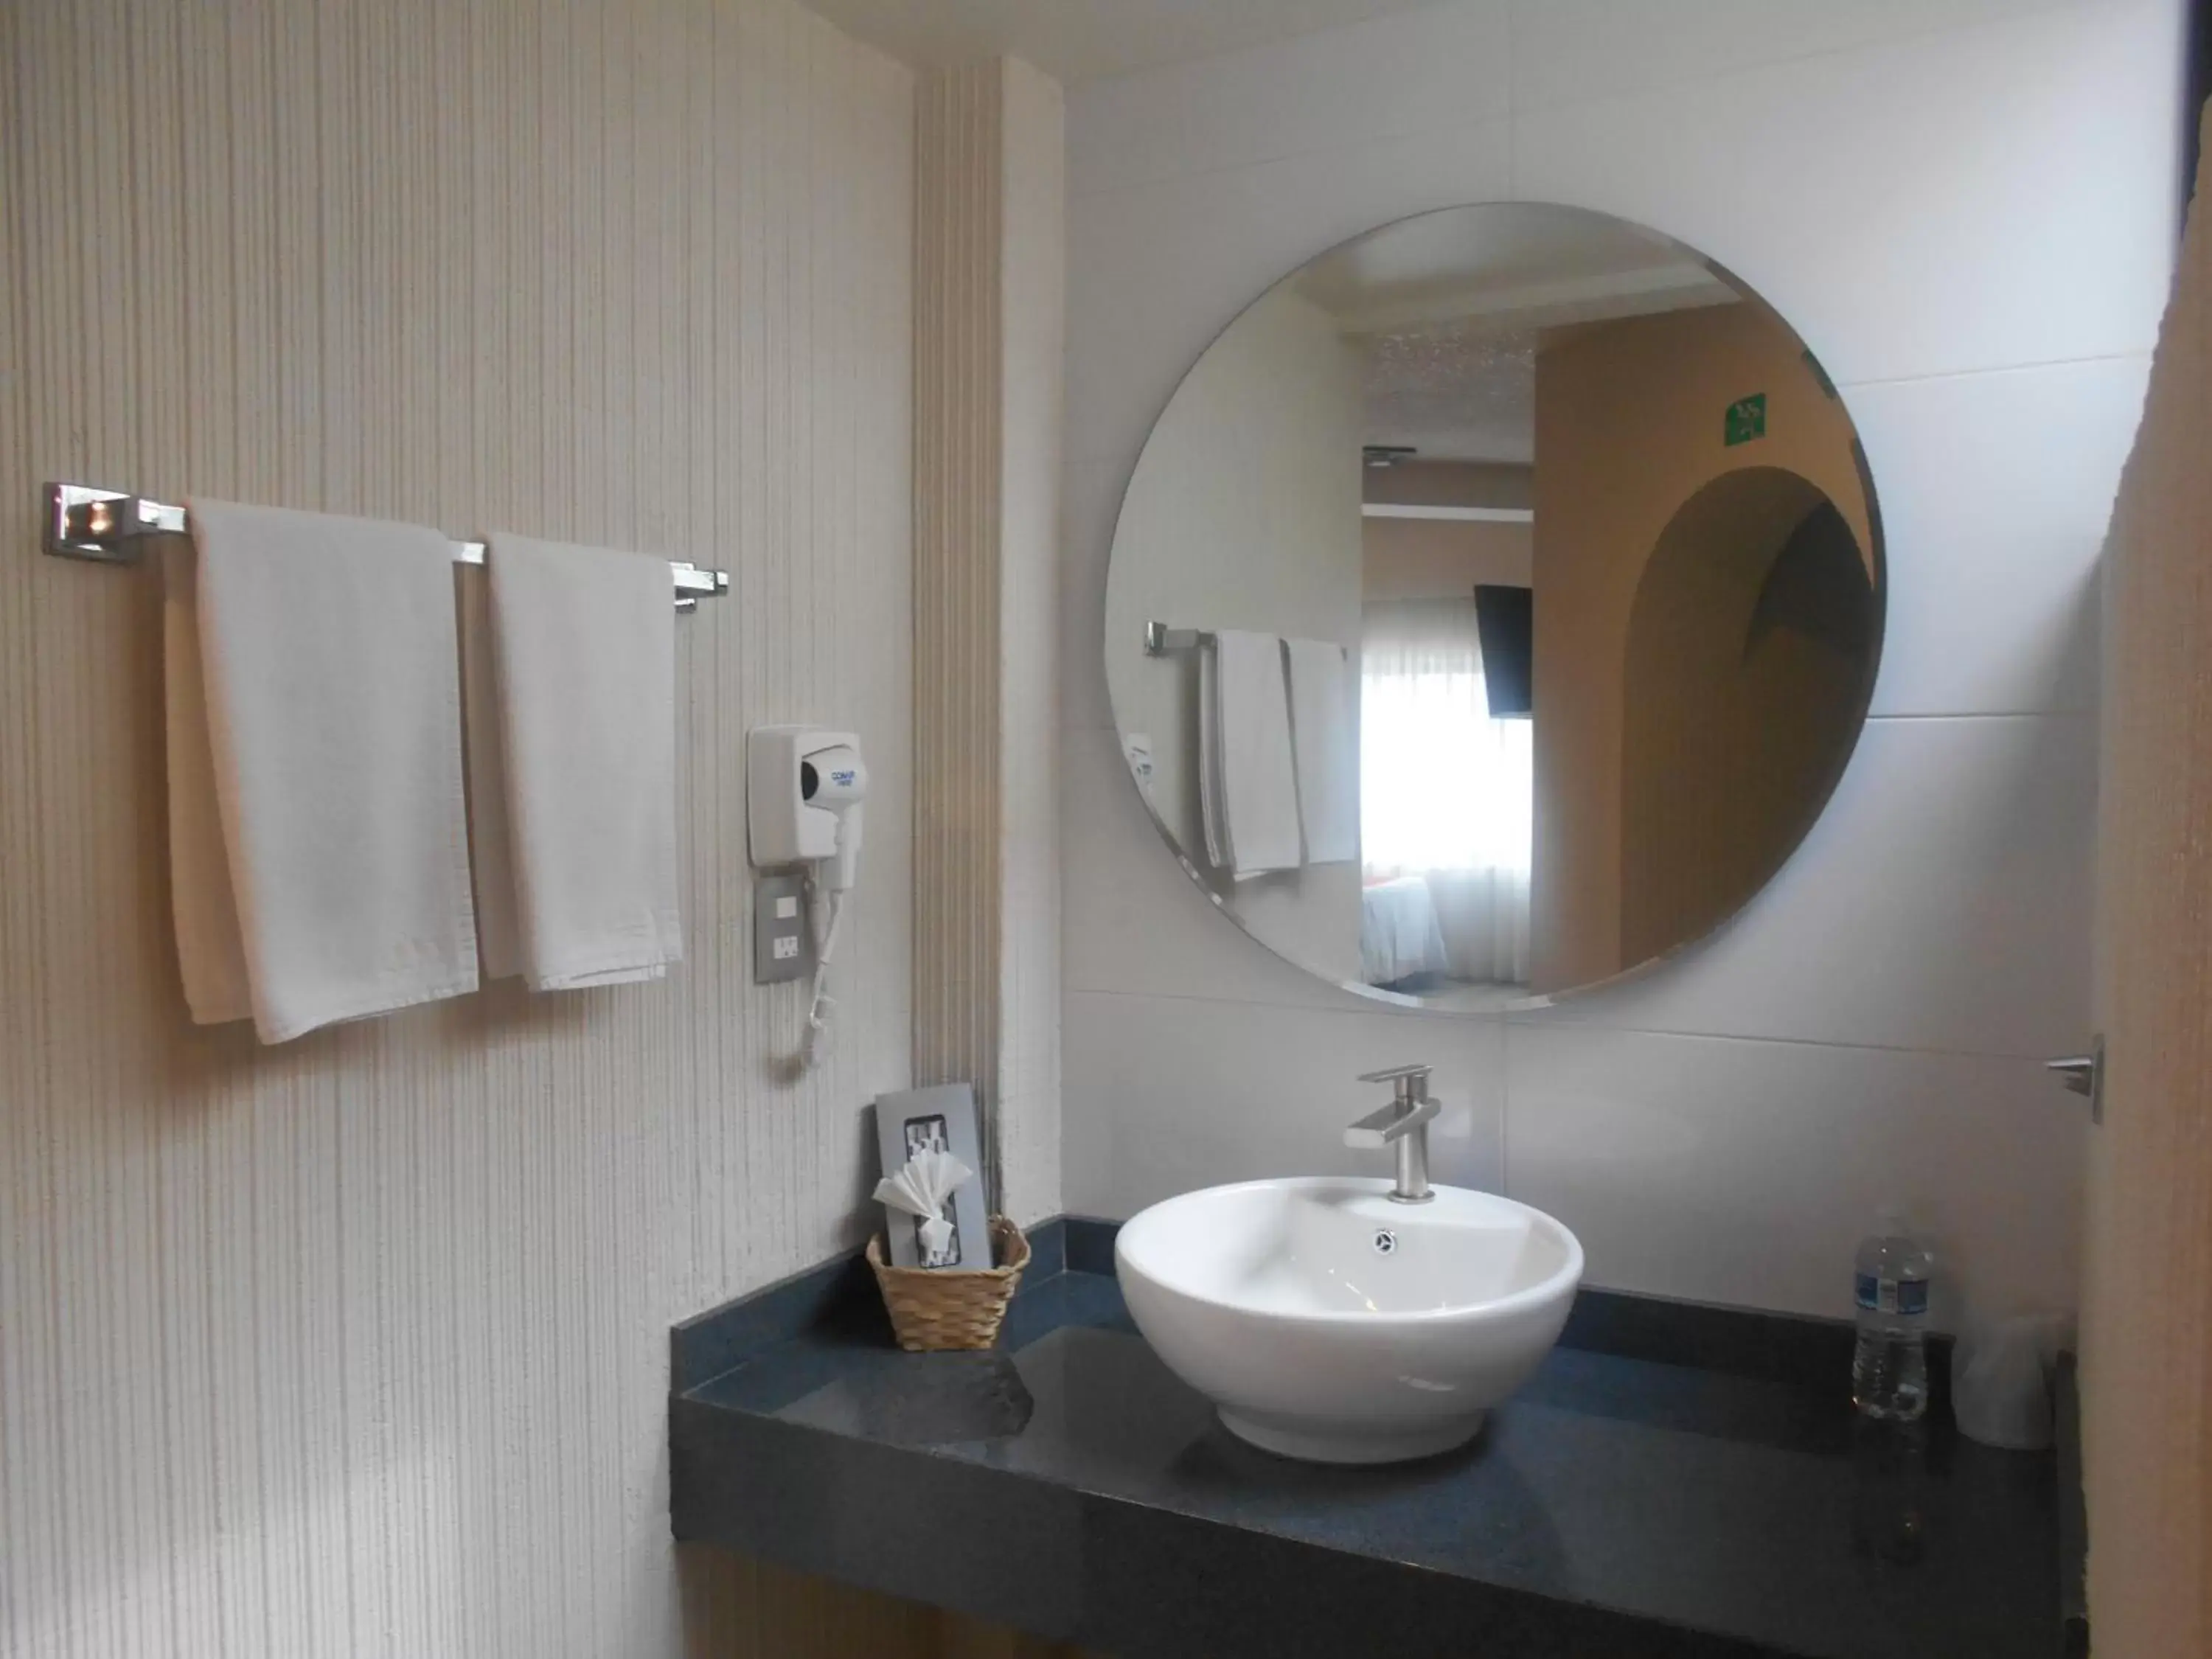 Bathroom in Hotel Puente Real